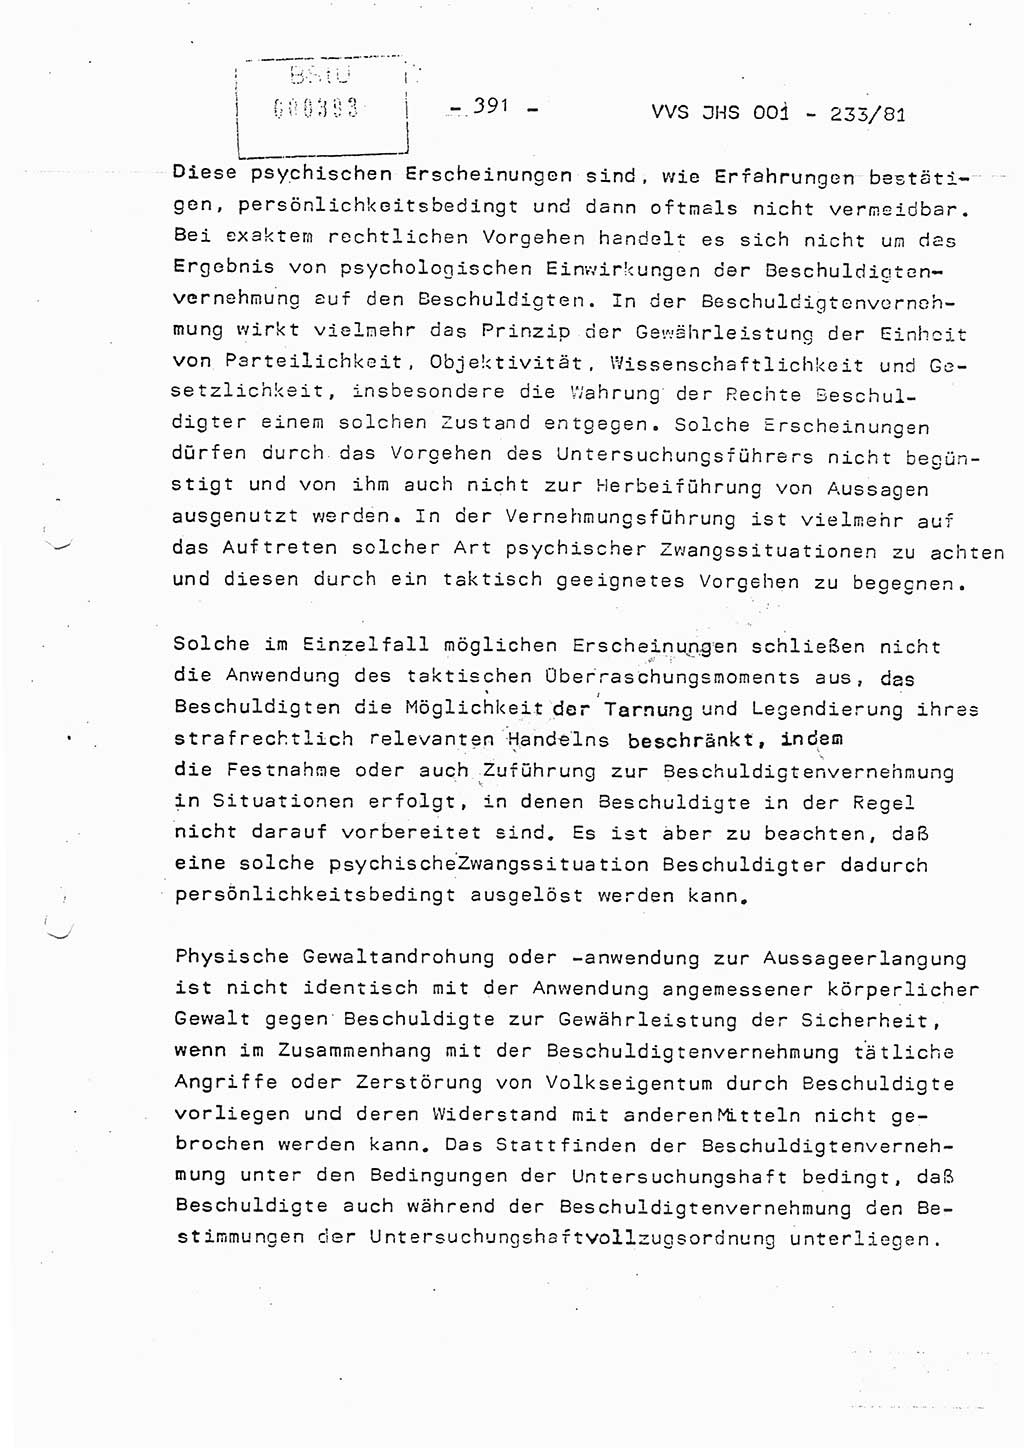 Dissertation Oberstleutnant Horst Zank (JHS), Oberstleutnant Dr. Karl-Heinz Knoblauch (JHS), Oberstleutnant Gustav-Adolf Kowalewski (HA Ⅸ), Oberstleutnant Wolfgang Plötner (HA Ⅸ), Ministerium für Staatssicherheit (MfS) [Deutsche Demokratische Republik (DDR)], Juristische Hochschule (JHS), Vertrauliche Verschlußsache (VVS) o001-233/81, Potsdam 1981, Blatt 391 (Diss. MfS DDR JHS VVS o001-233/81 1981, Bl. 391)